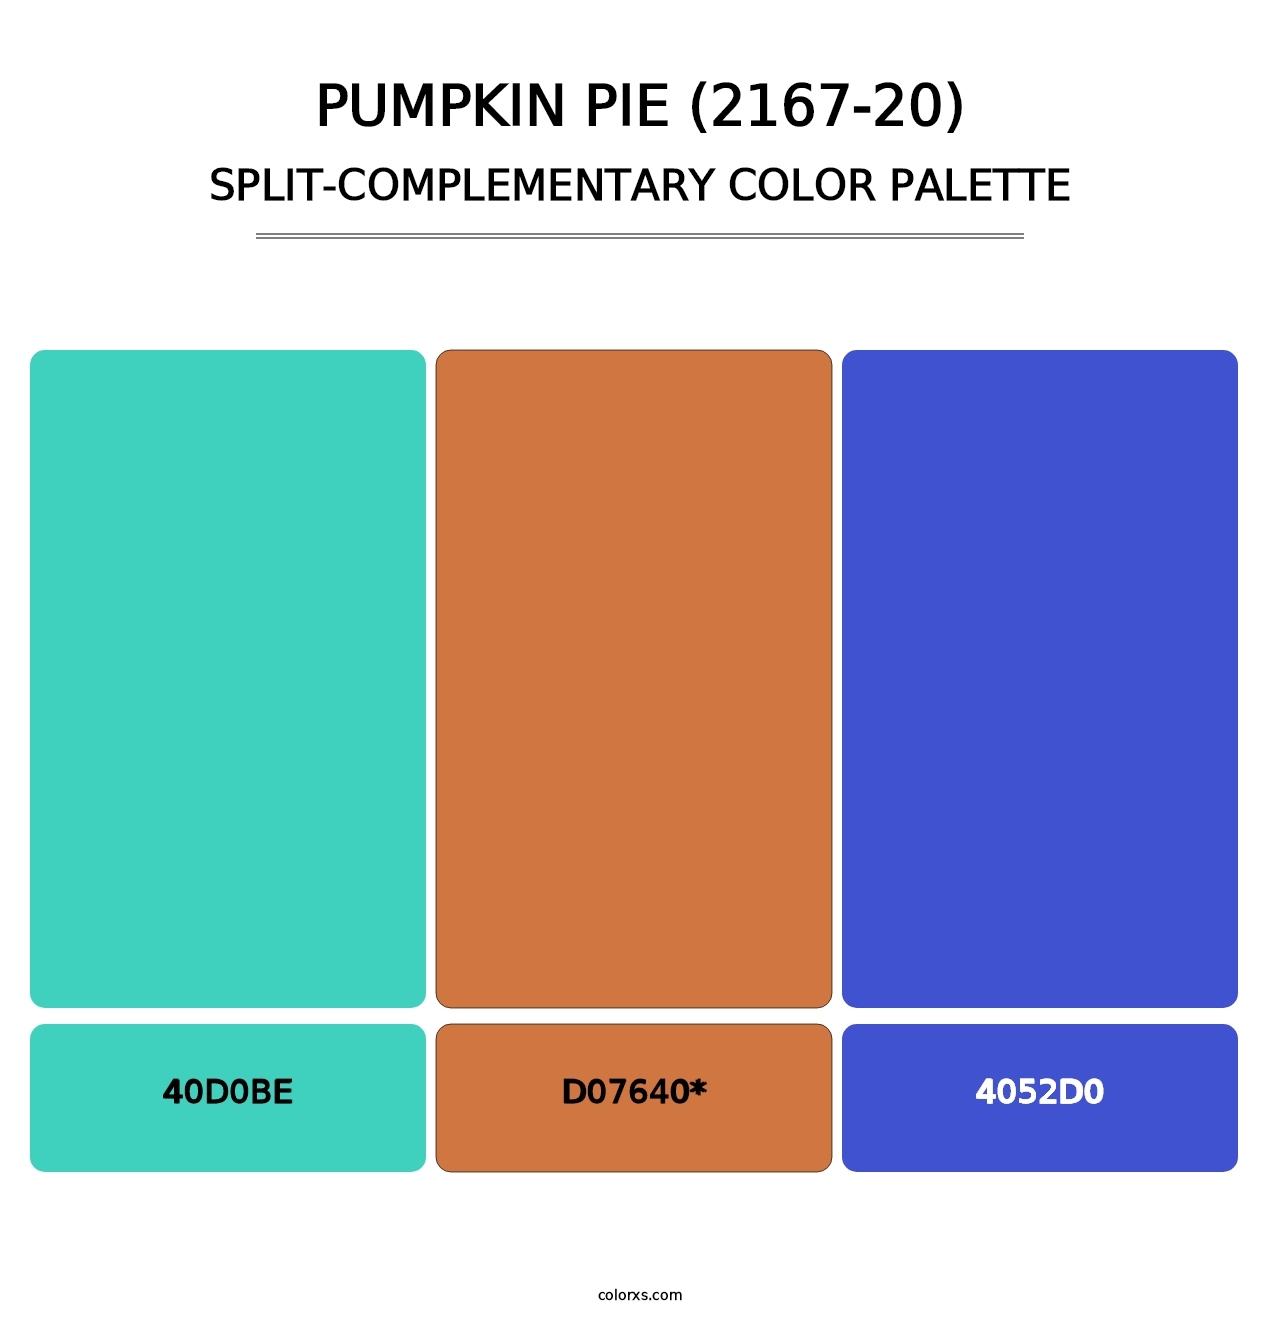 Pumpkin Pie (2167-20) - Split-Complementary Color Palette